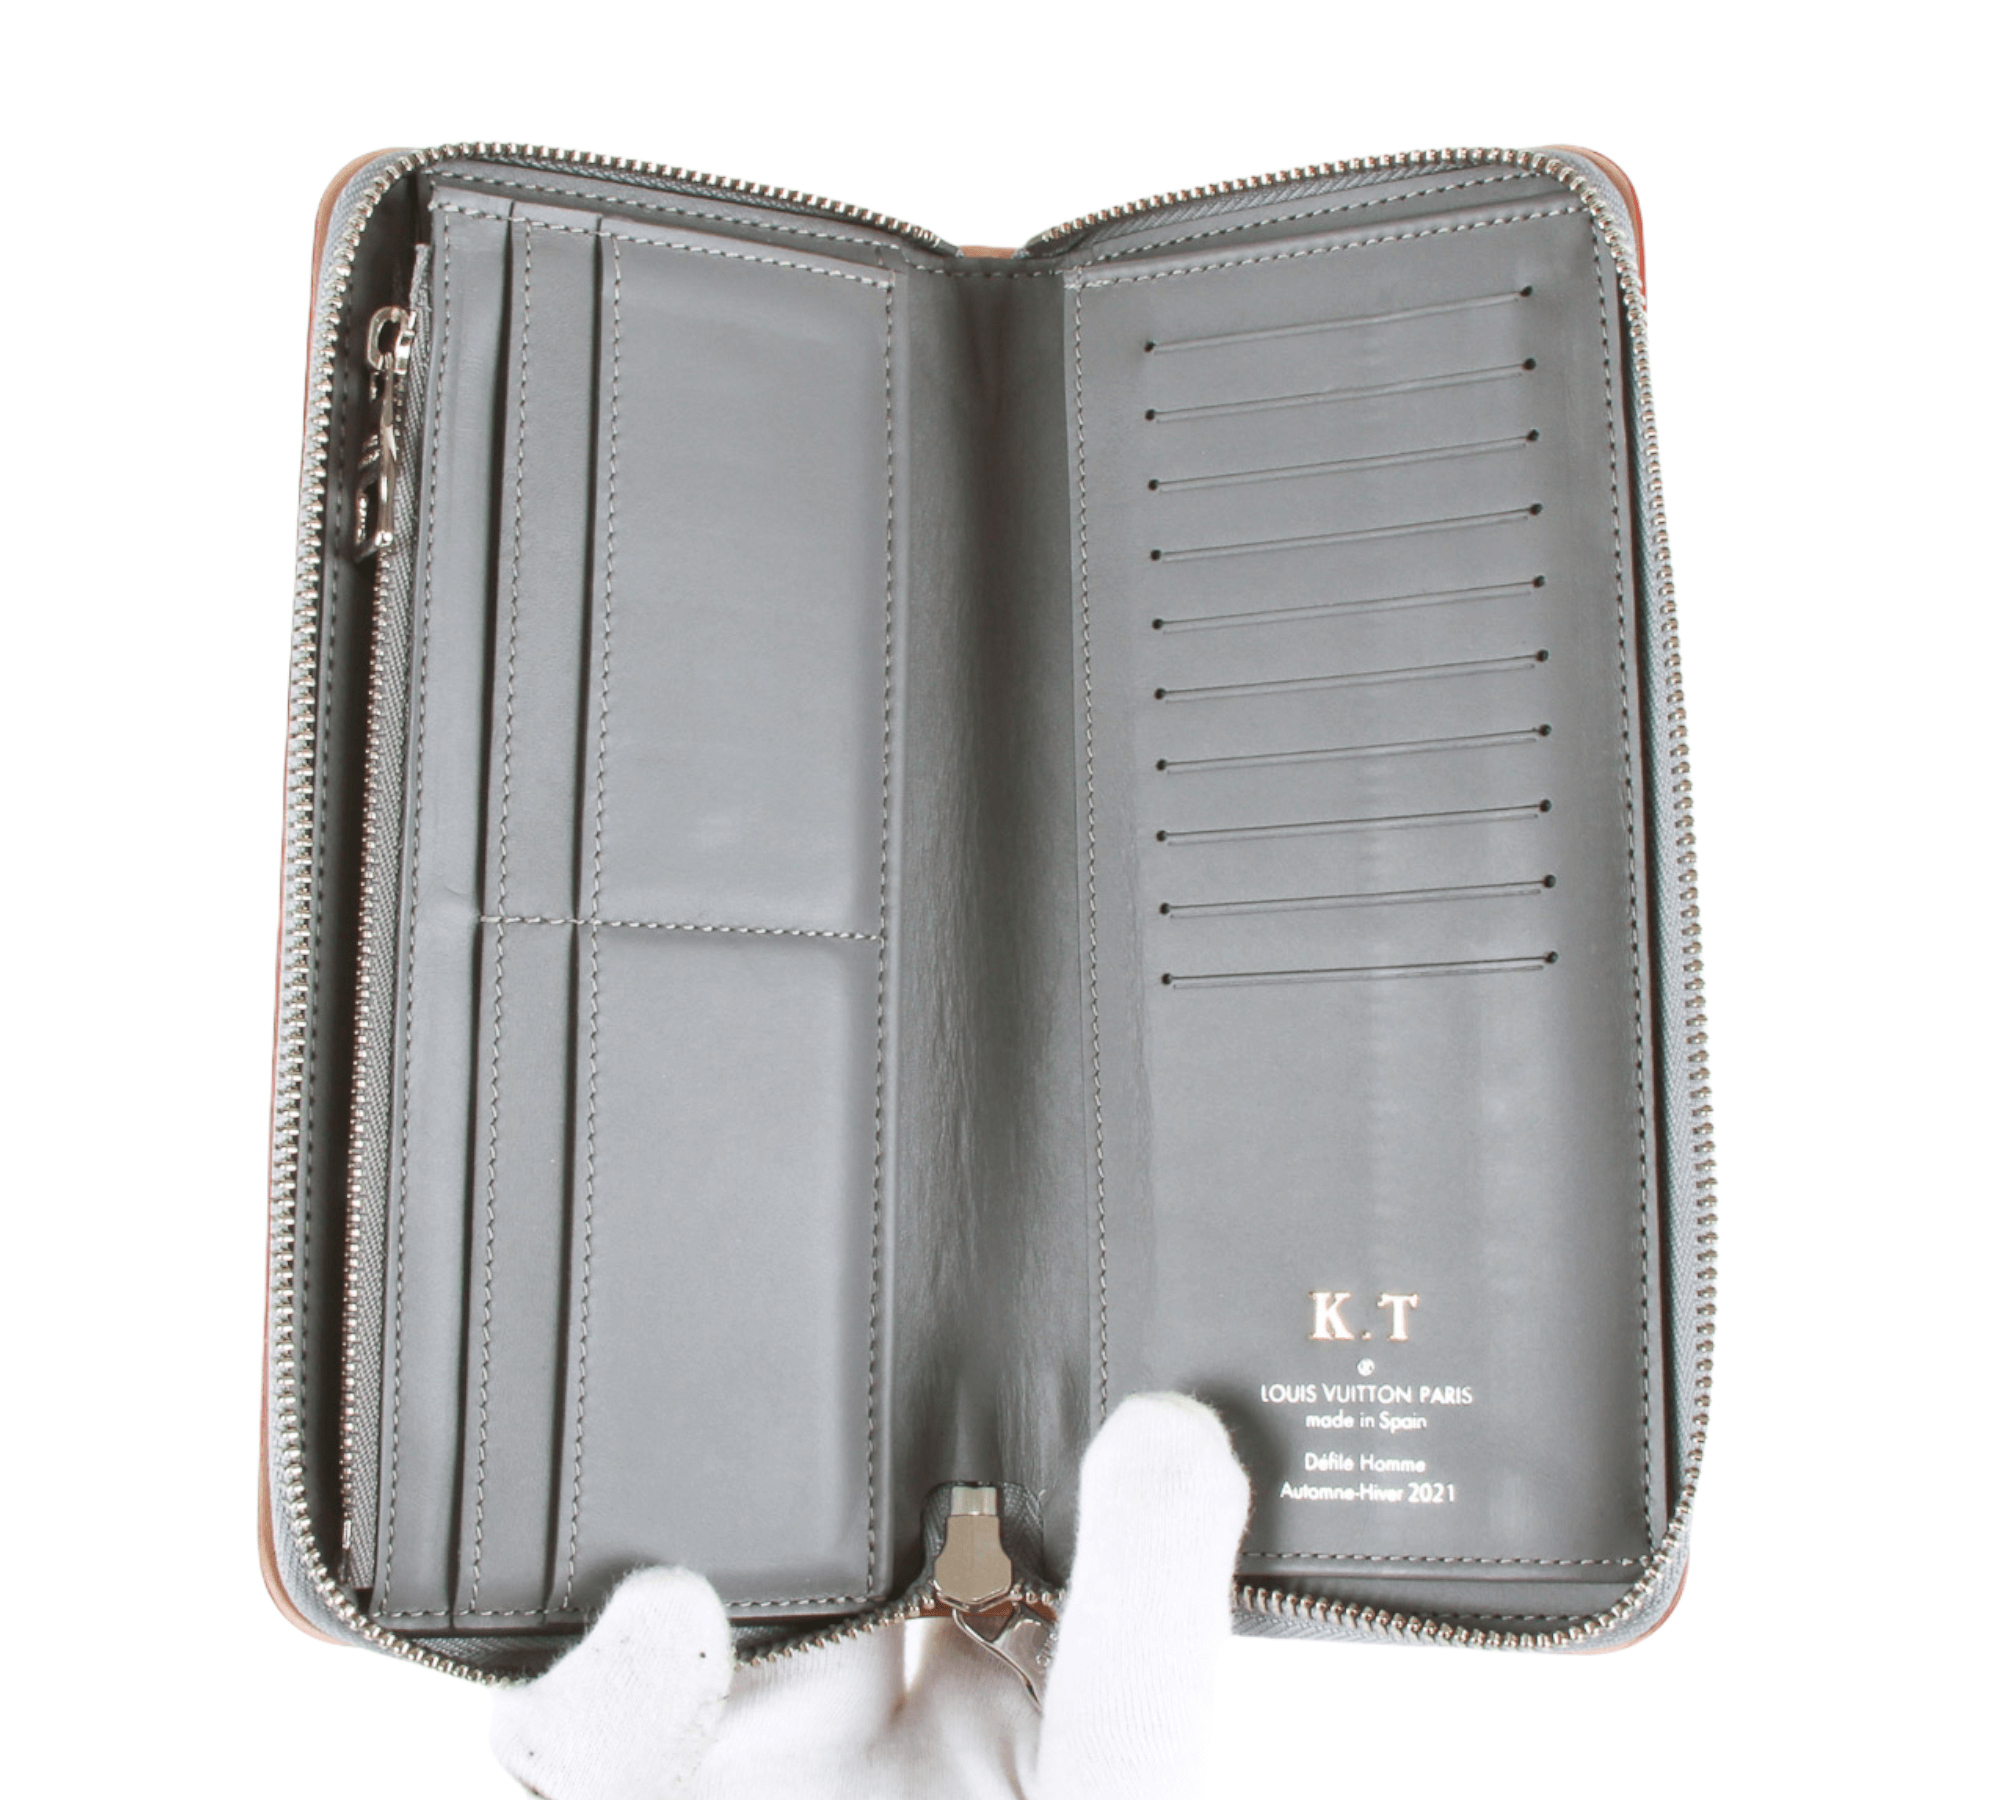 Louis Vuitton, Bags, Louis Vuitton Panam Line Zippy Wallet Red Long Wallet  M5843 Lv Auth Hk06